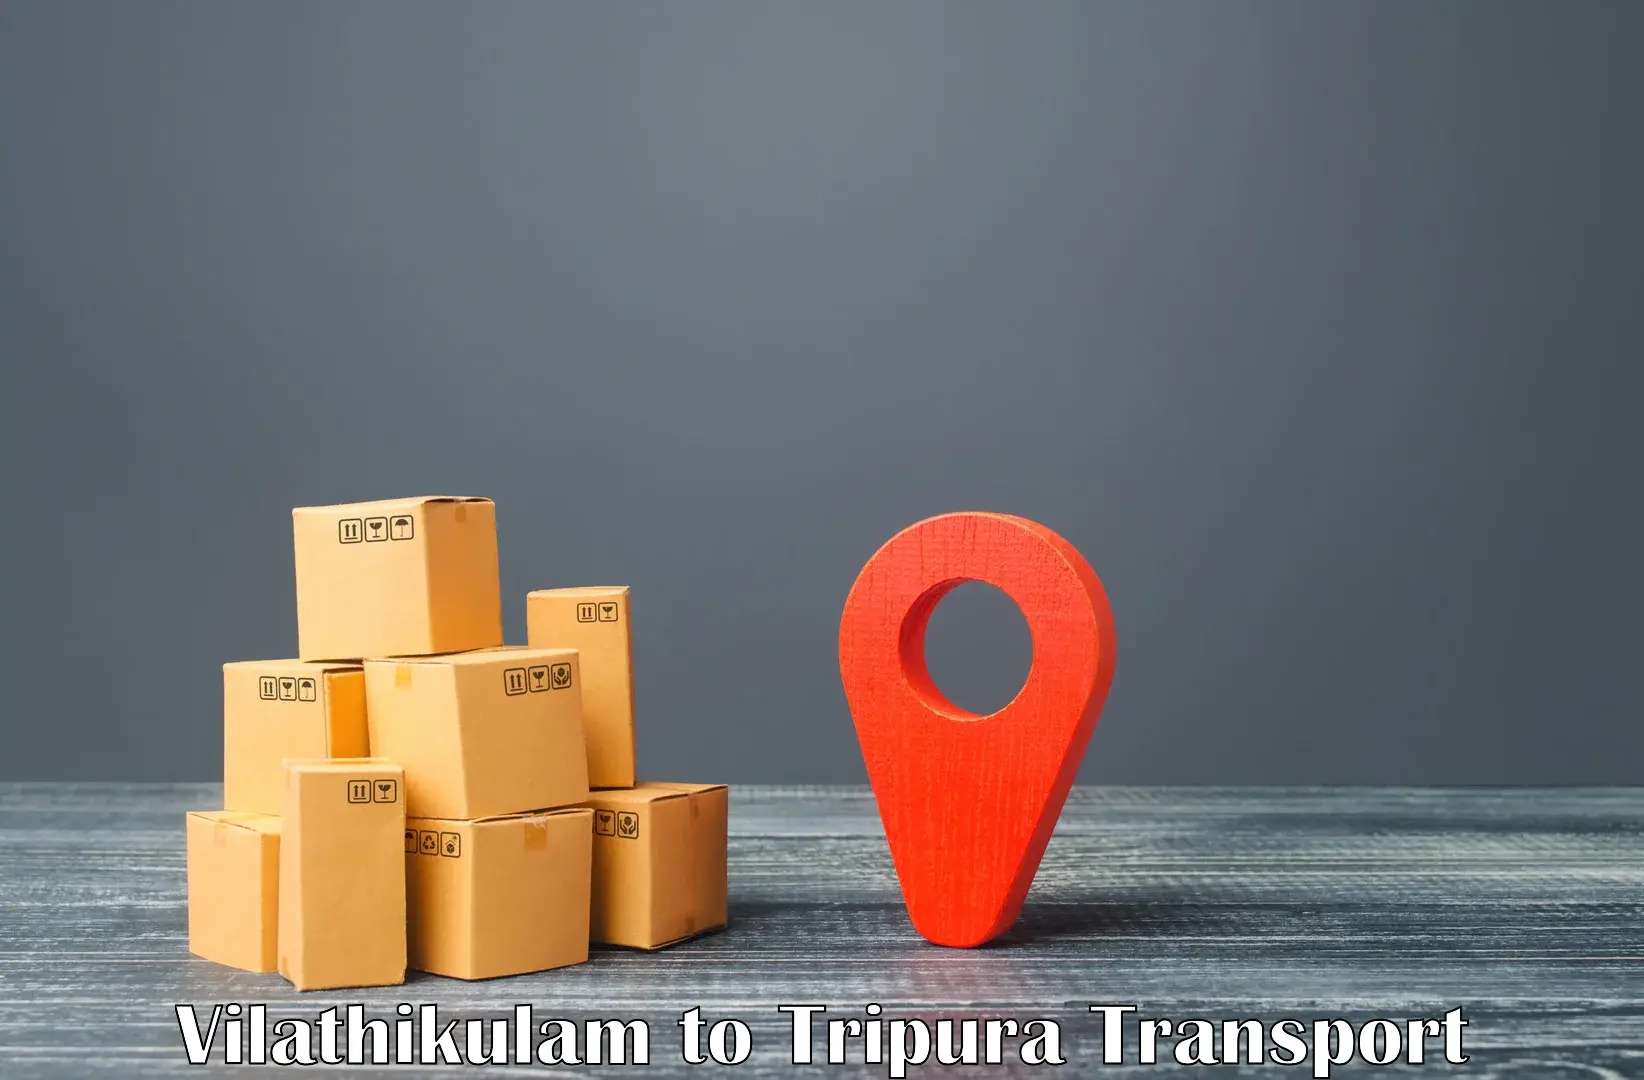 Intercity transport Vilathikulam to Tripura